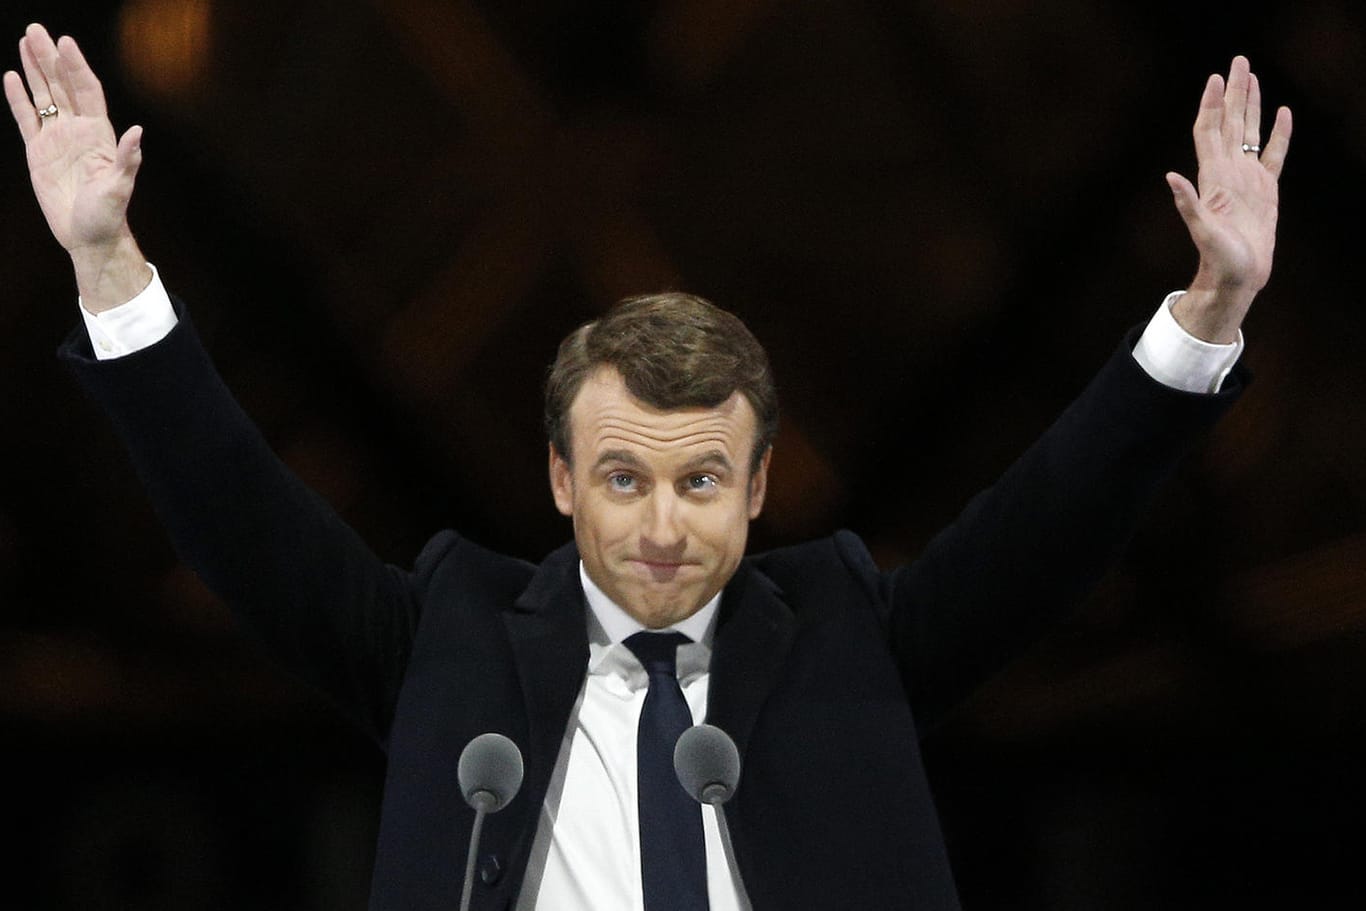 Emmanuel Macron hat die französische Präsidentenwahl nach Auszählung aller Stimmen mit 66,1 Prozent gewonnen.